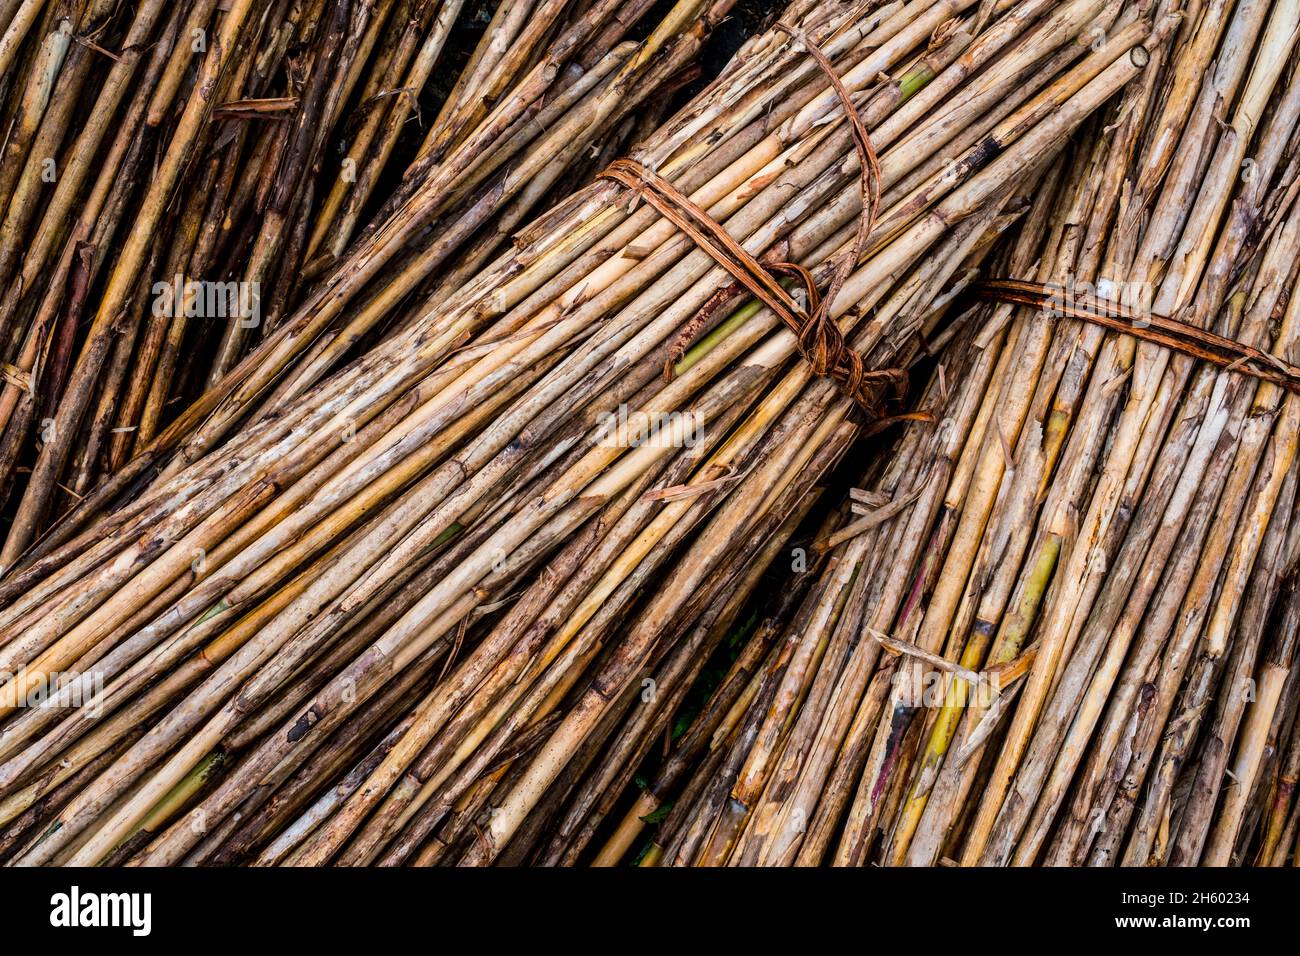 Juillet 2017.Runo est une herbe (produit forestier non ligneux) récoltée localement.Ses tiges sont utilisées pour les structures murales et ses feuilles sont utilisées pour le chaume.Malico, Nueva Vizcaya, Philippines. Banque D'Images